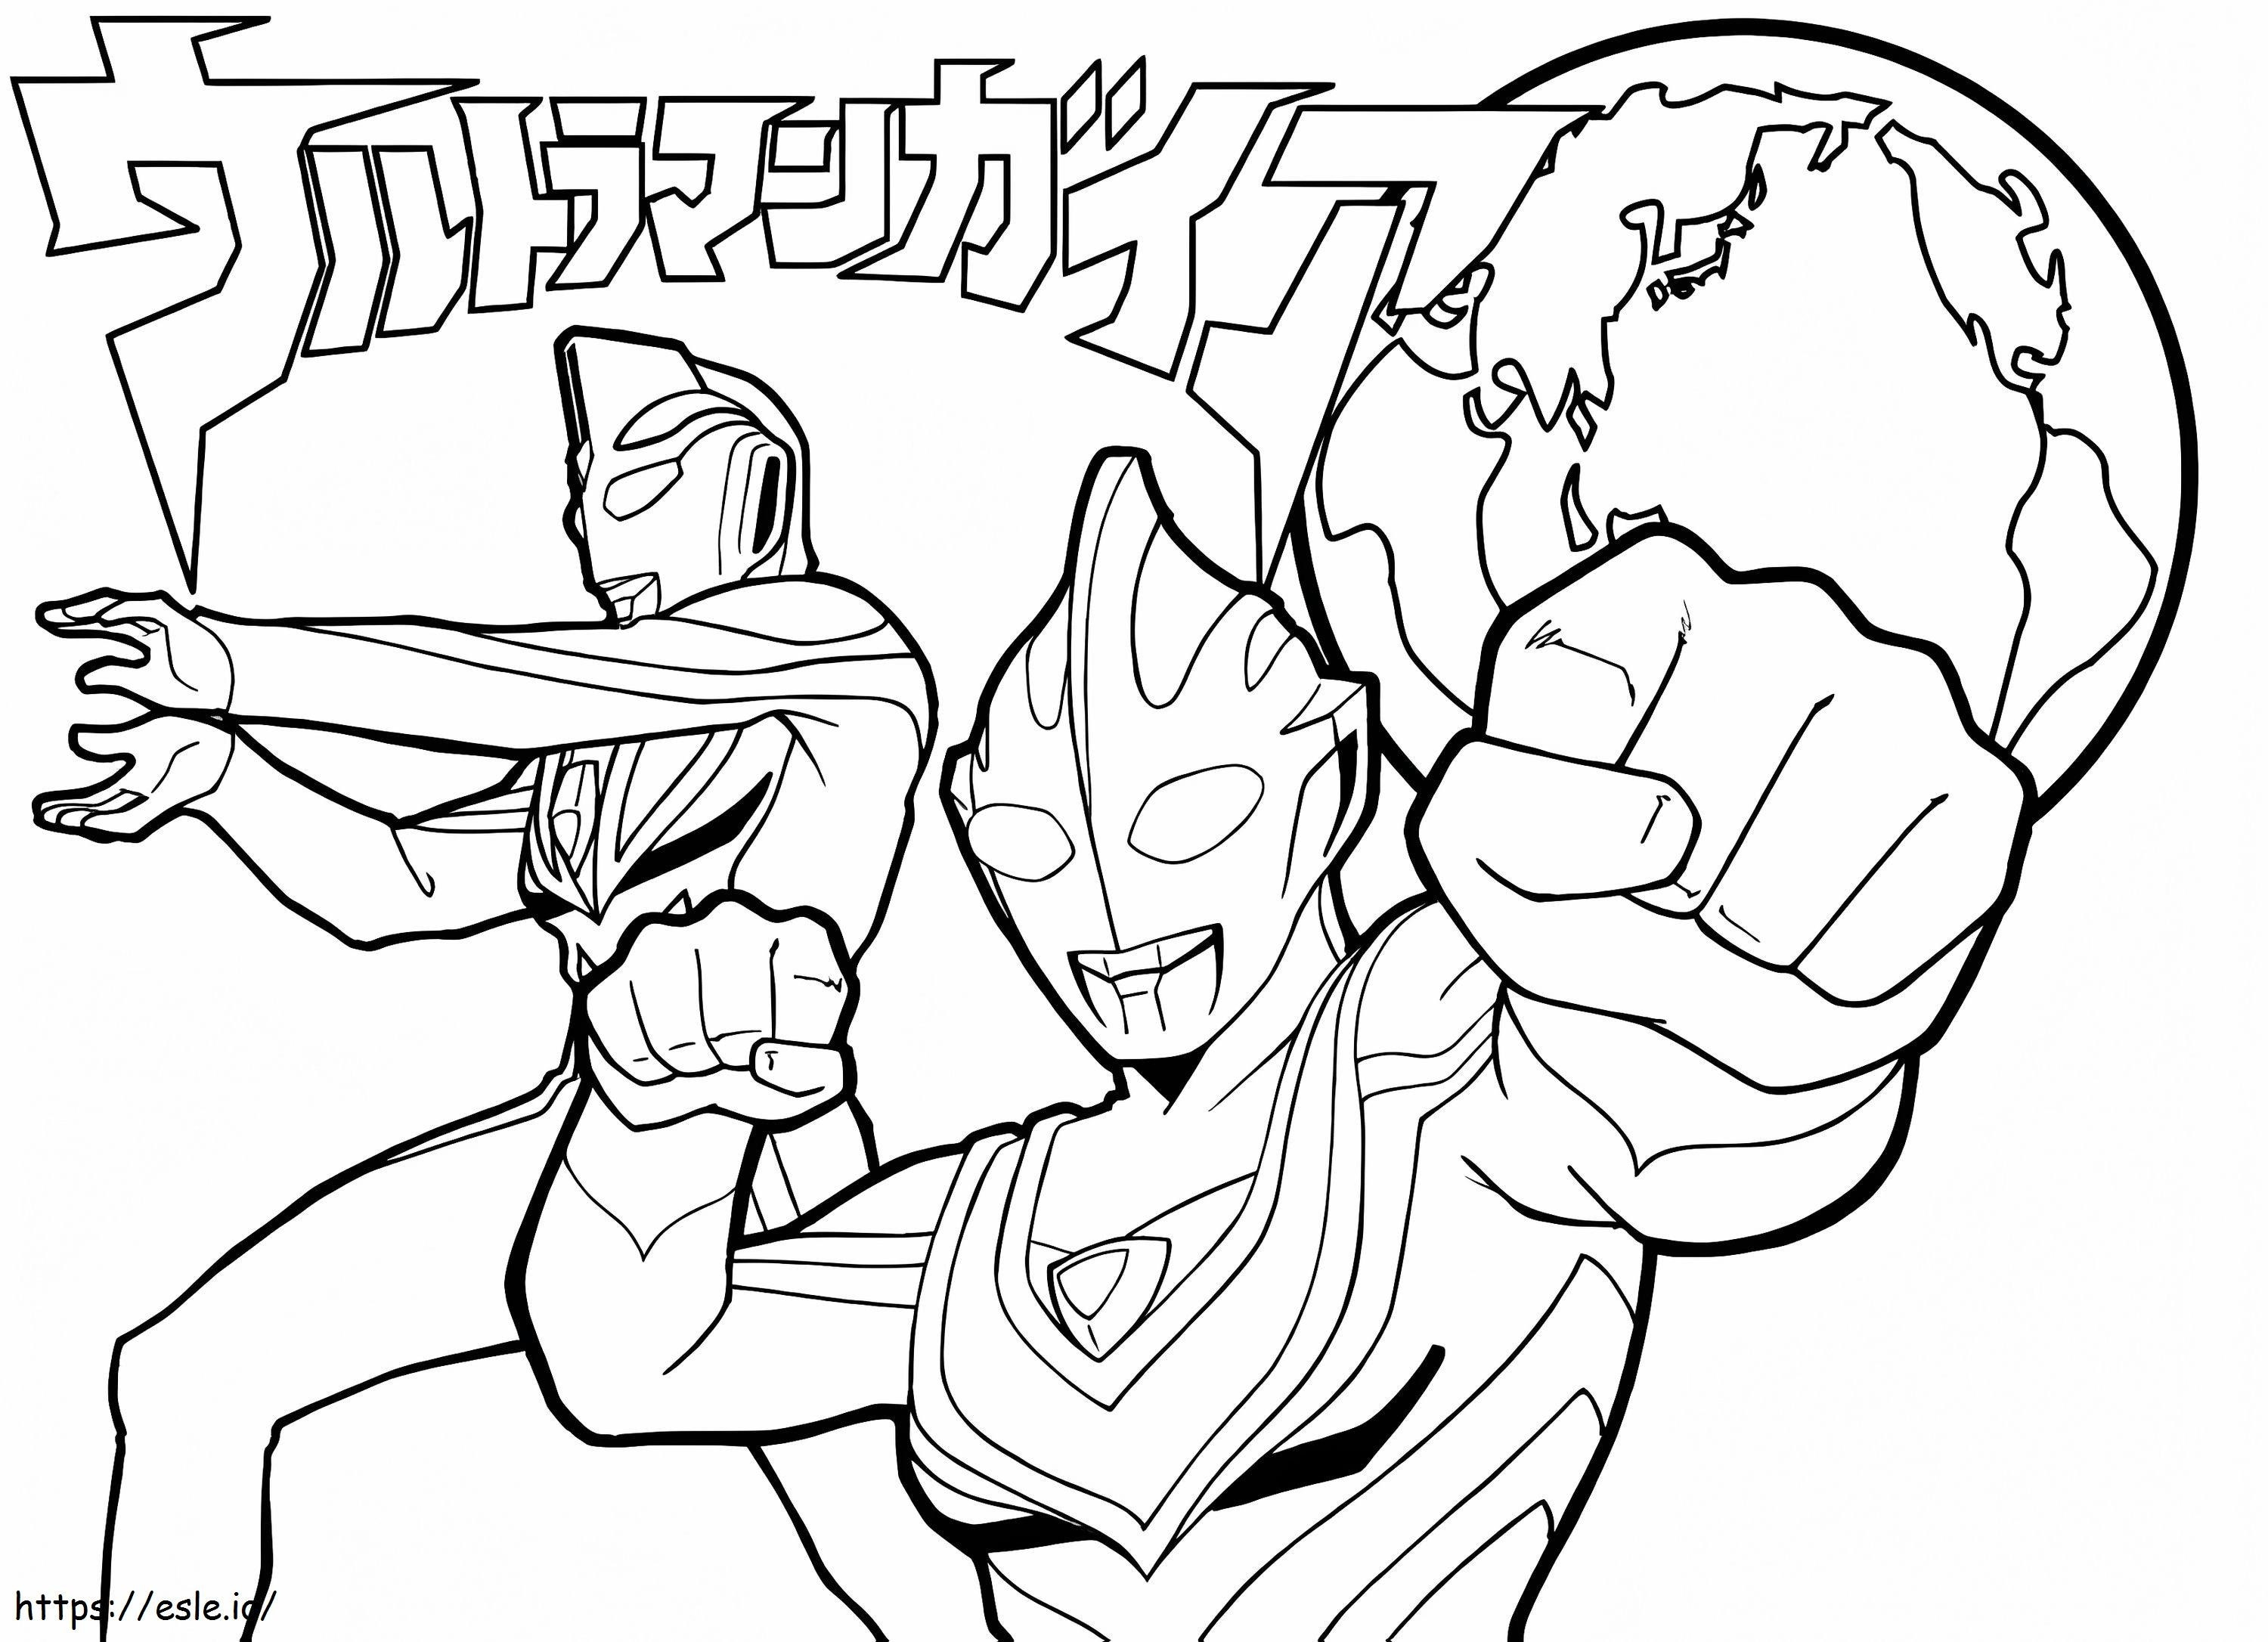 Ultraman Dövüşü 5 boyama